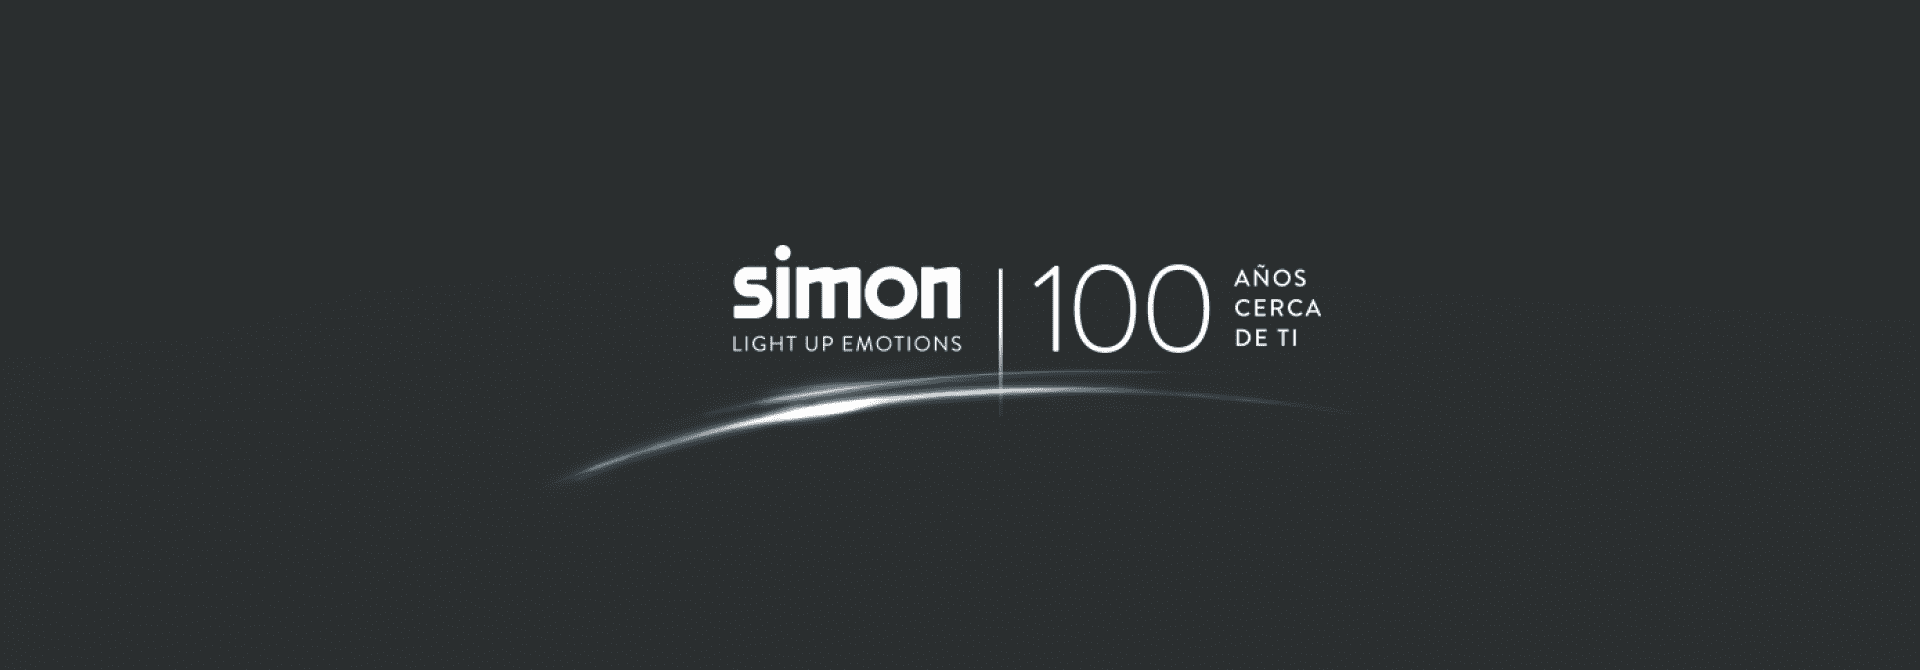 Simon 100